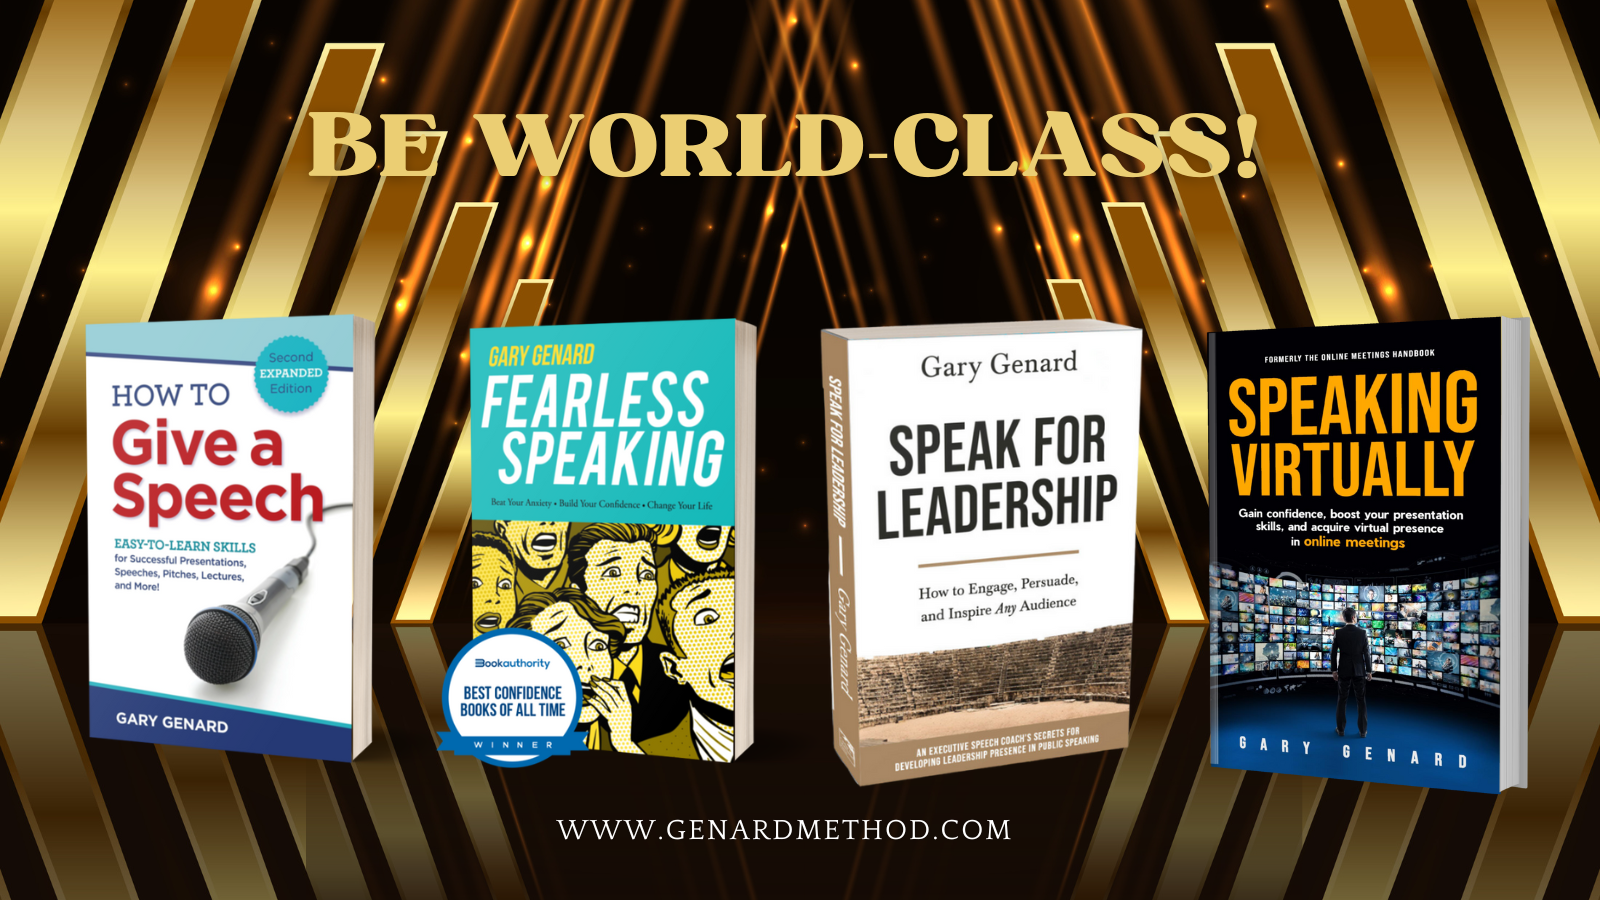 Dr. Gary Genard's public speaking books for leadership.